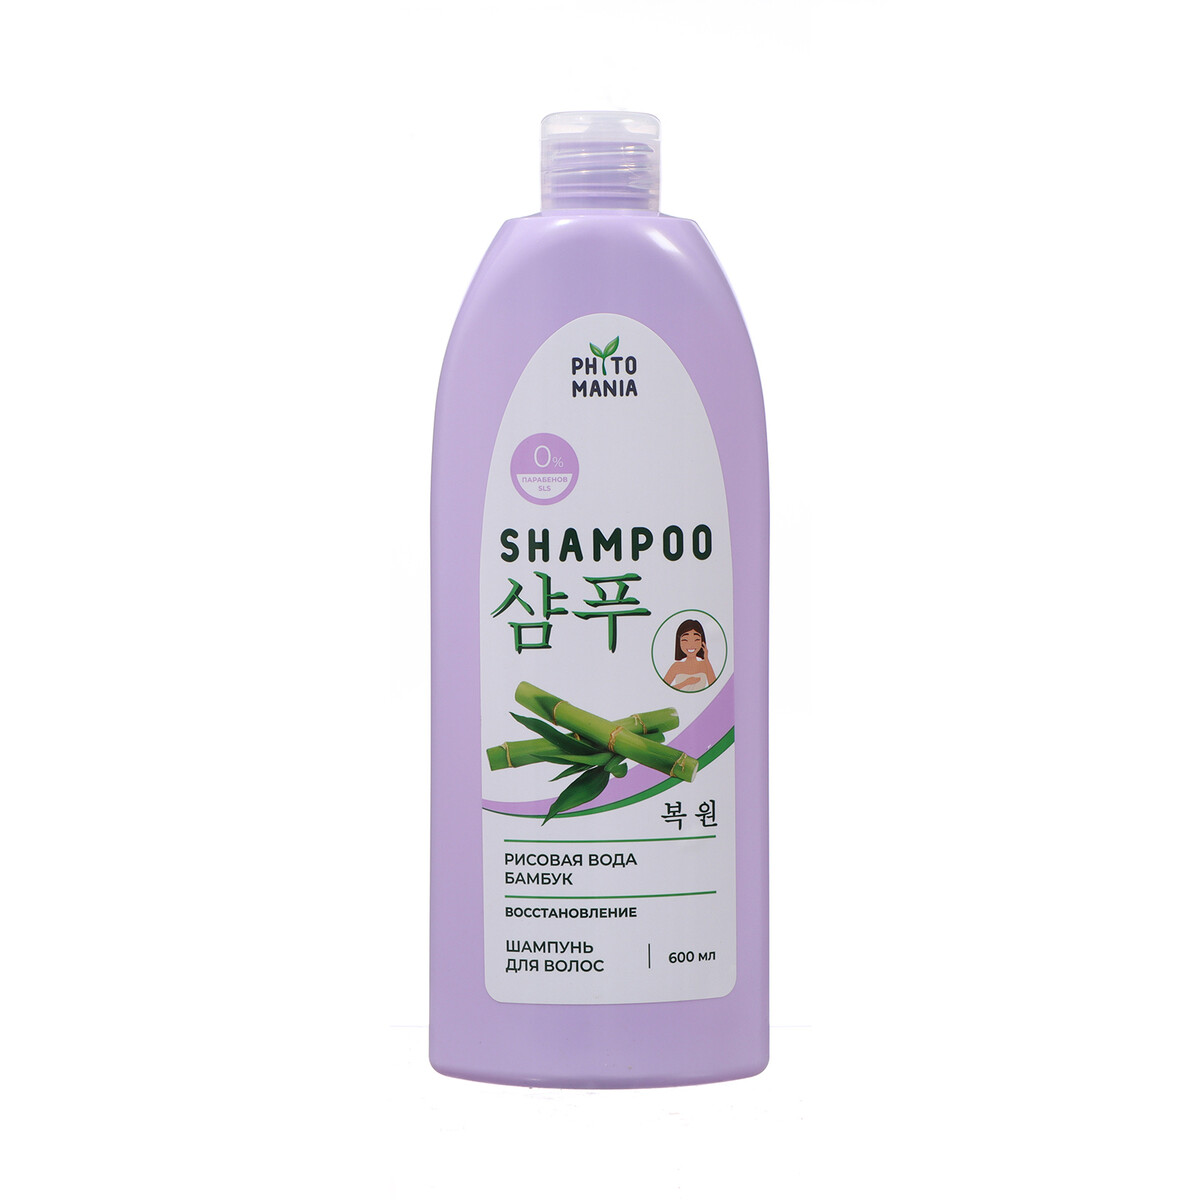 Шампунь для волос phytomania рисовая вода и бамбук, 600 мл маска глазурь д волос розовая вода